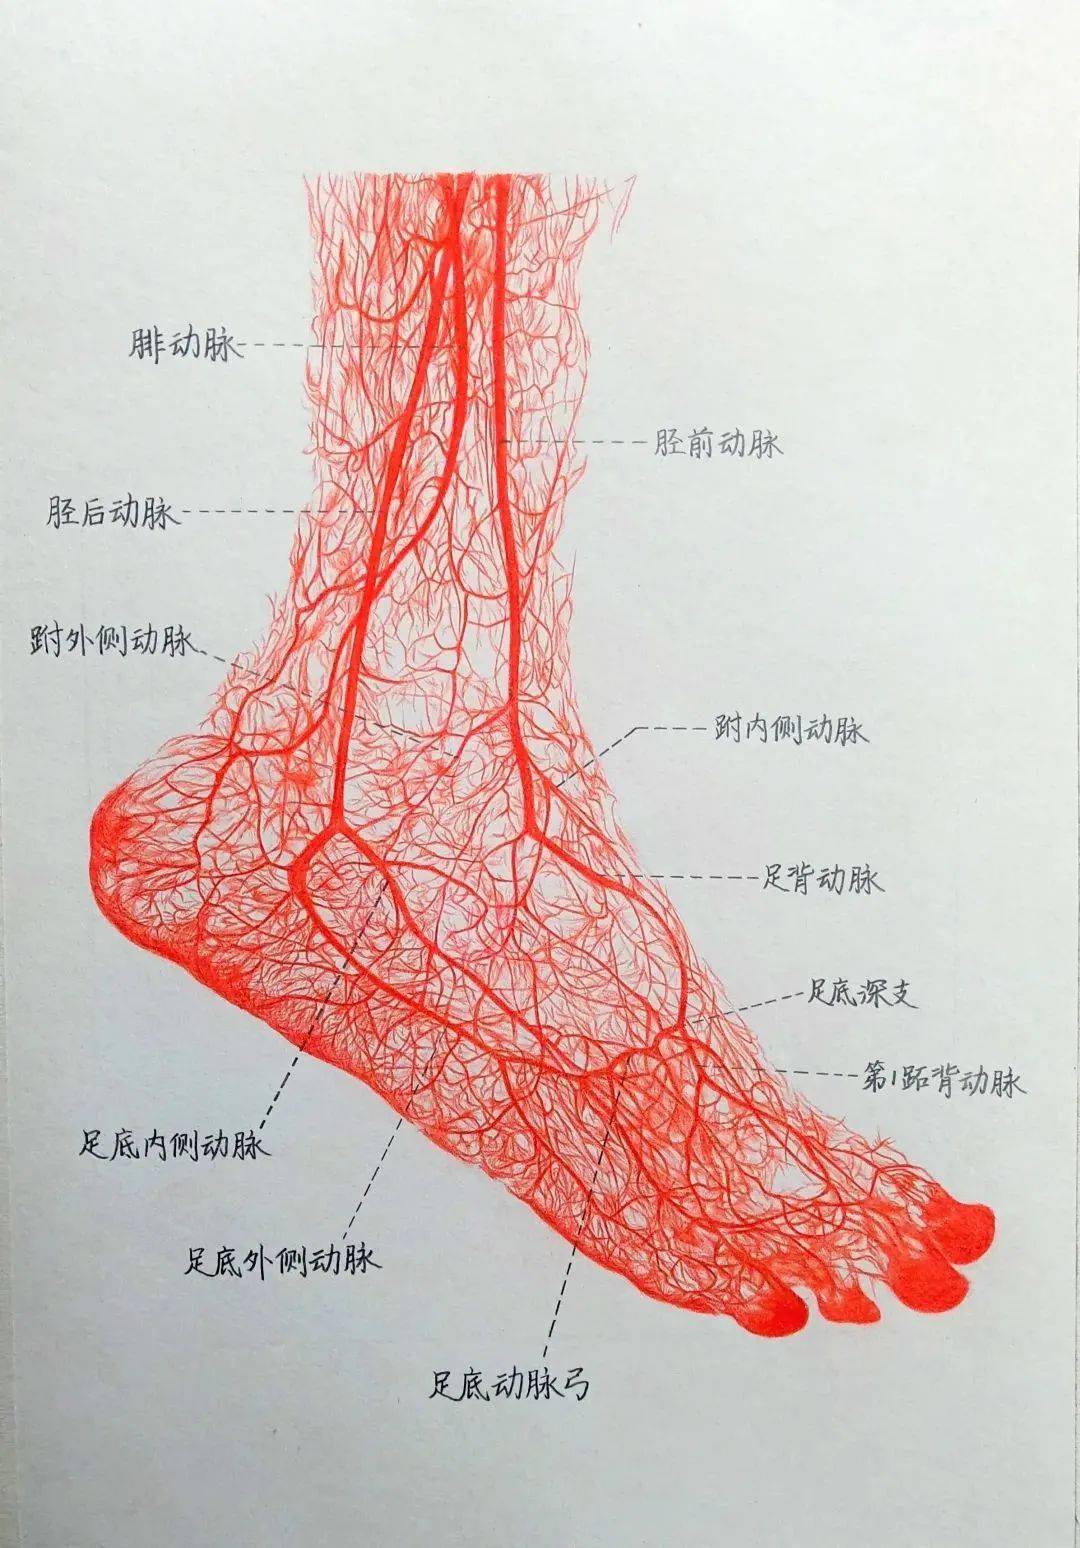 作品临摹自系统解剖学教材,为足背动脉及其分支铸型标本(前外侧面观)